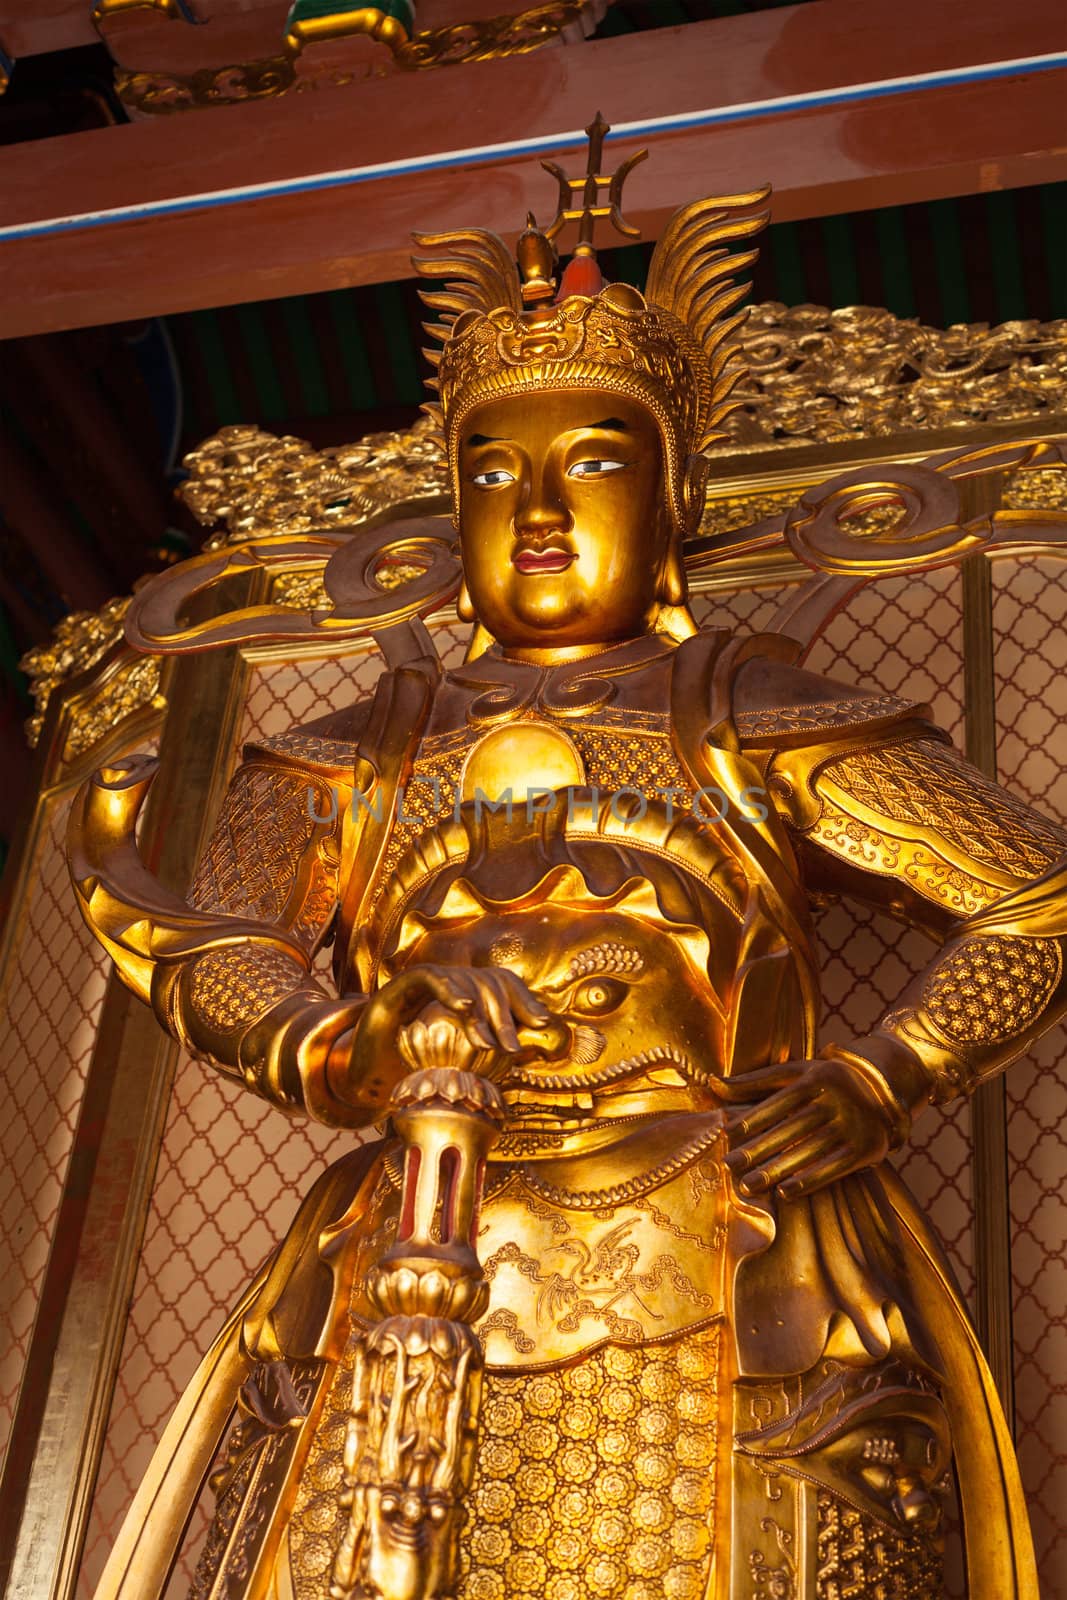 Skanda bodhisattva statue in Tian Wang Dian (Hall of Celestial king). Lian Shan Shuang Lin Monastery, Singapore